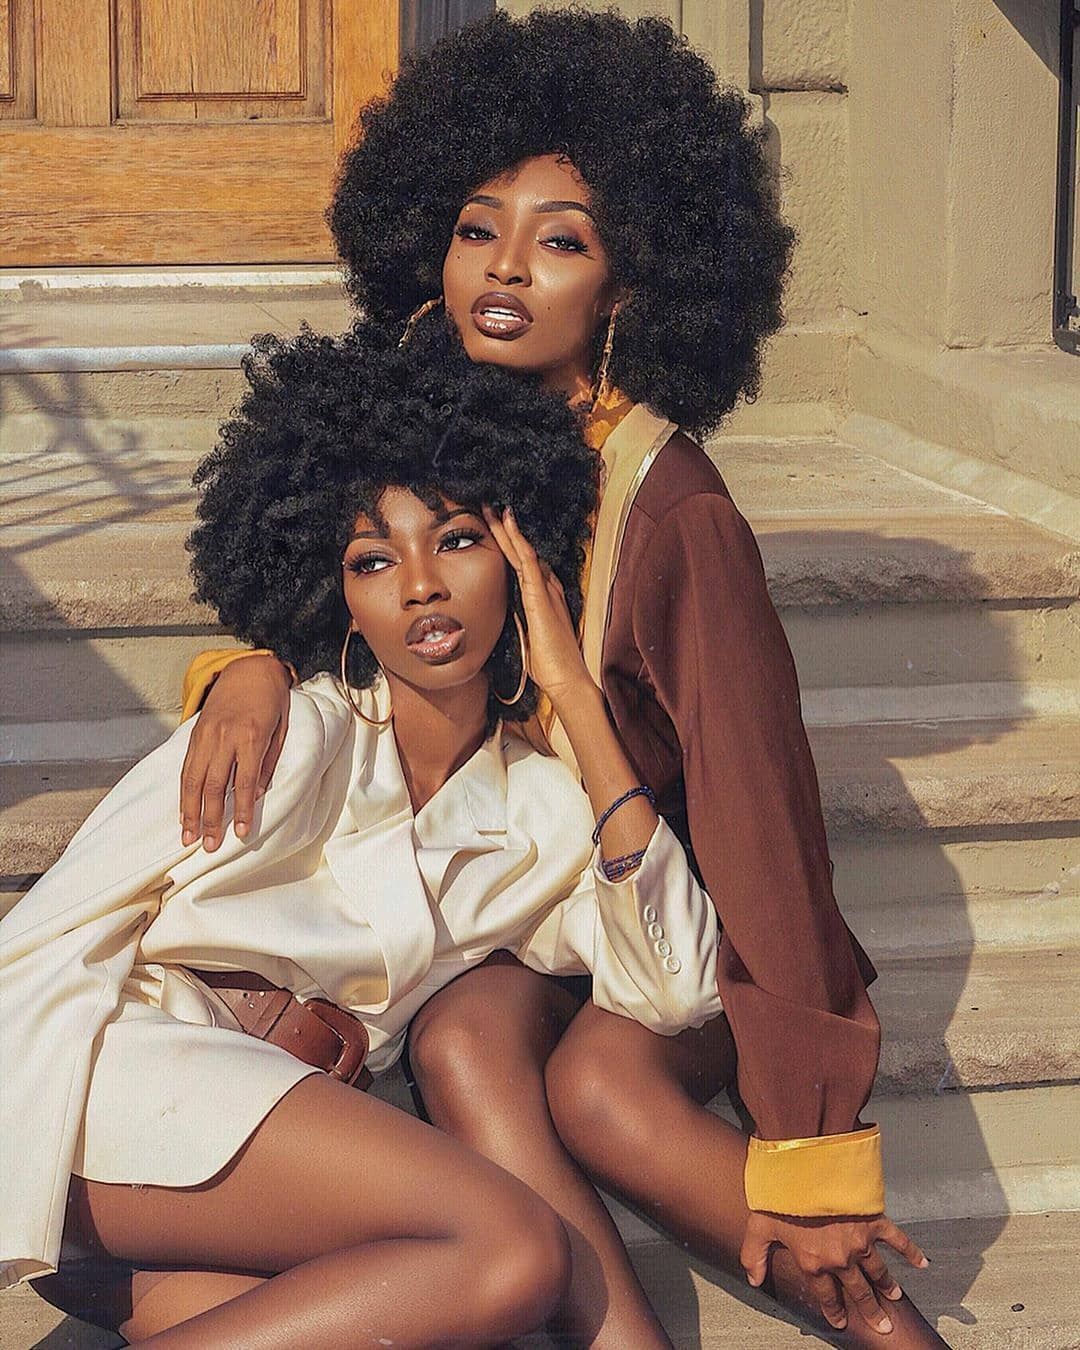 Un-ruly.com - Un-ruly.com -   25 beauty Black women ideas